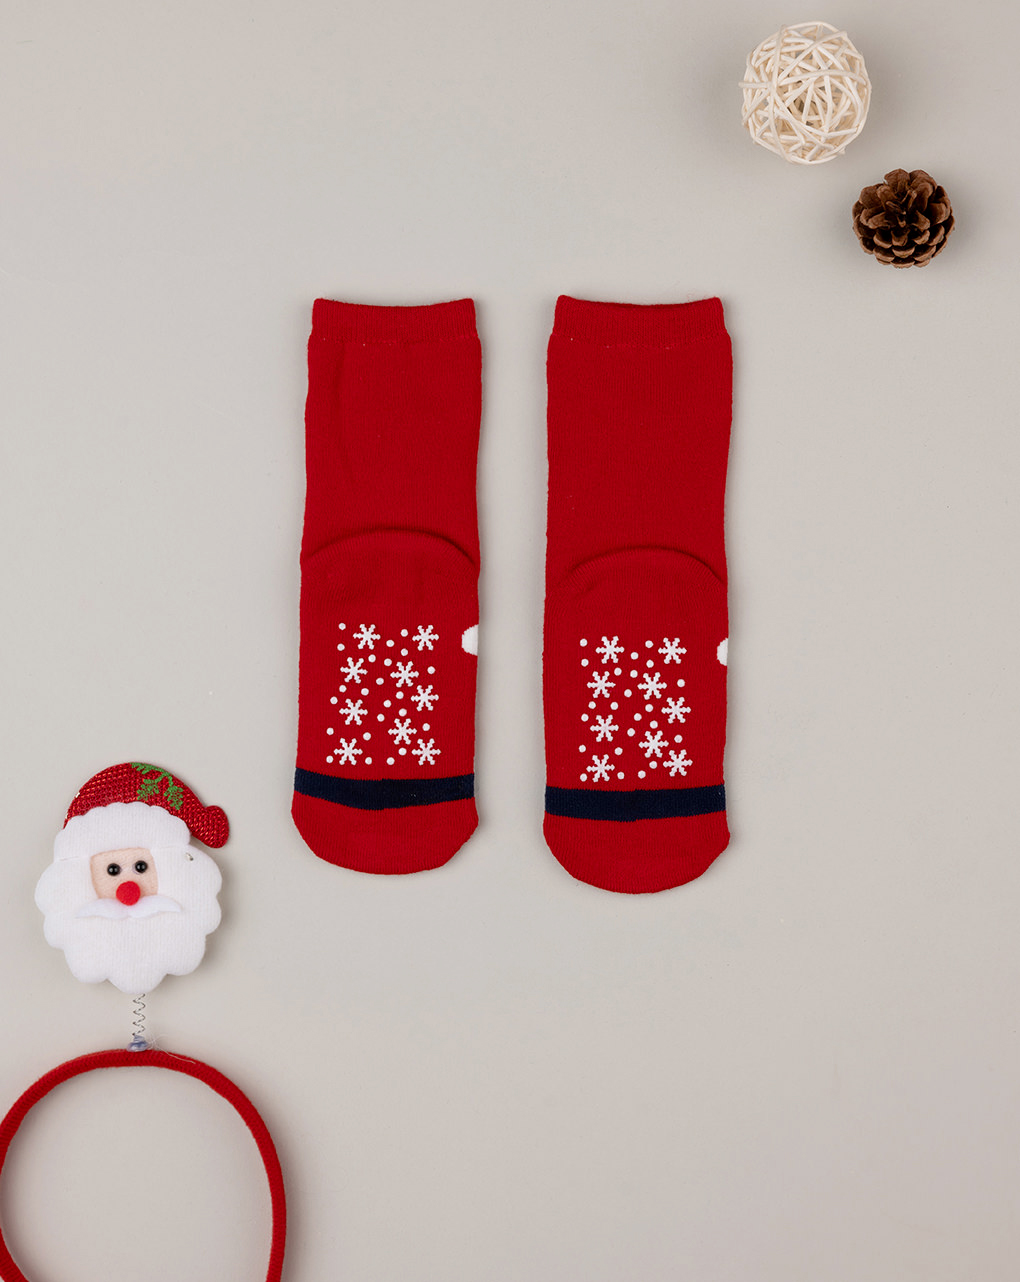 χριστουγεννιάτικες παιδικές αντιολισθητικές κάλτσες με άγιο βασίλη για αγόρι - Prénatal